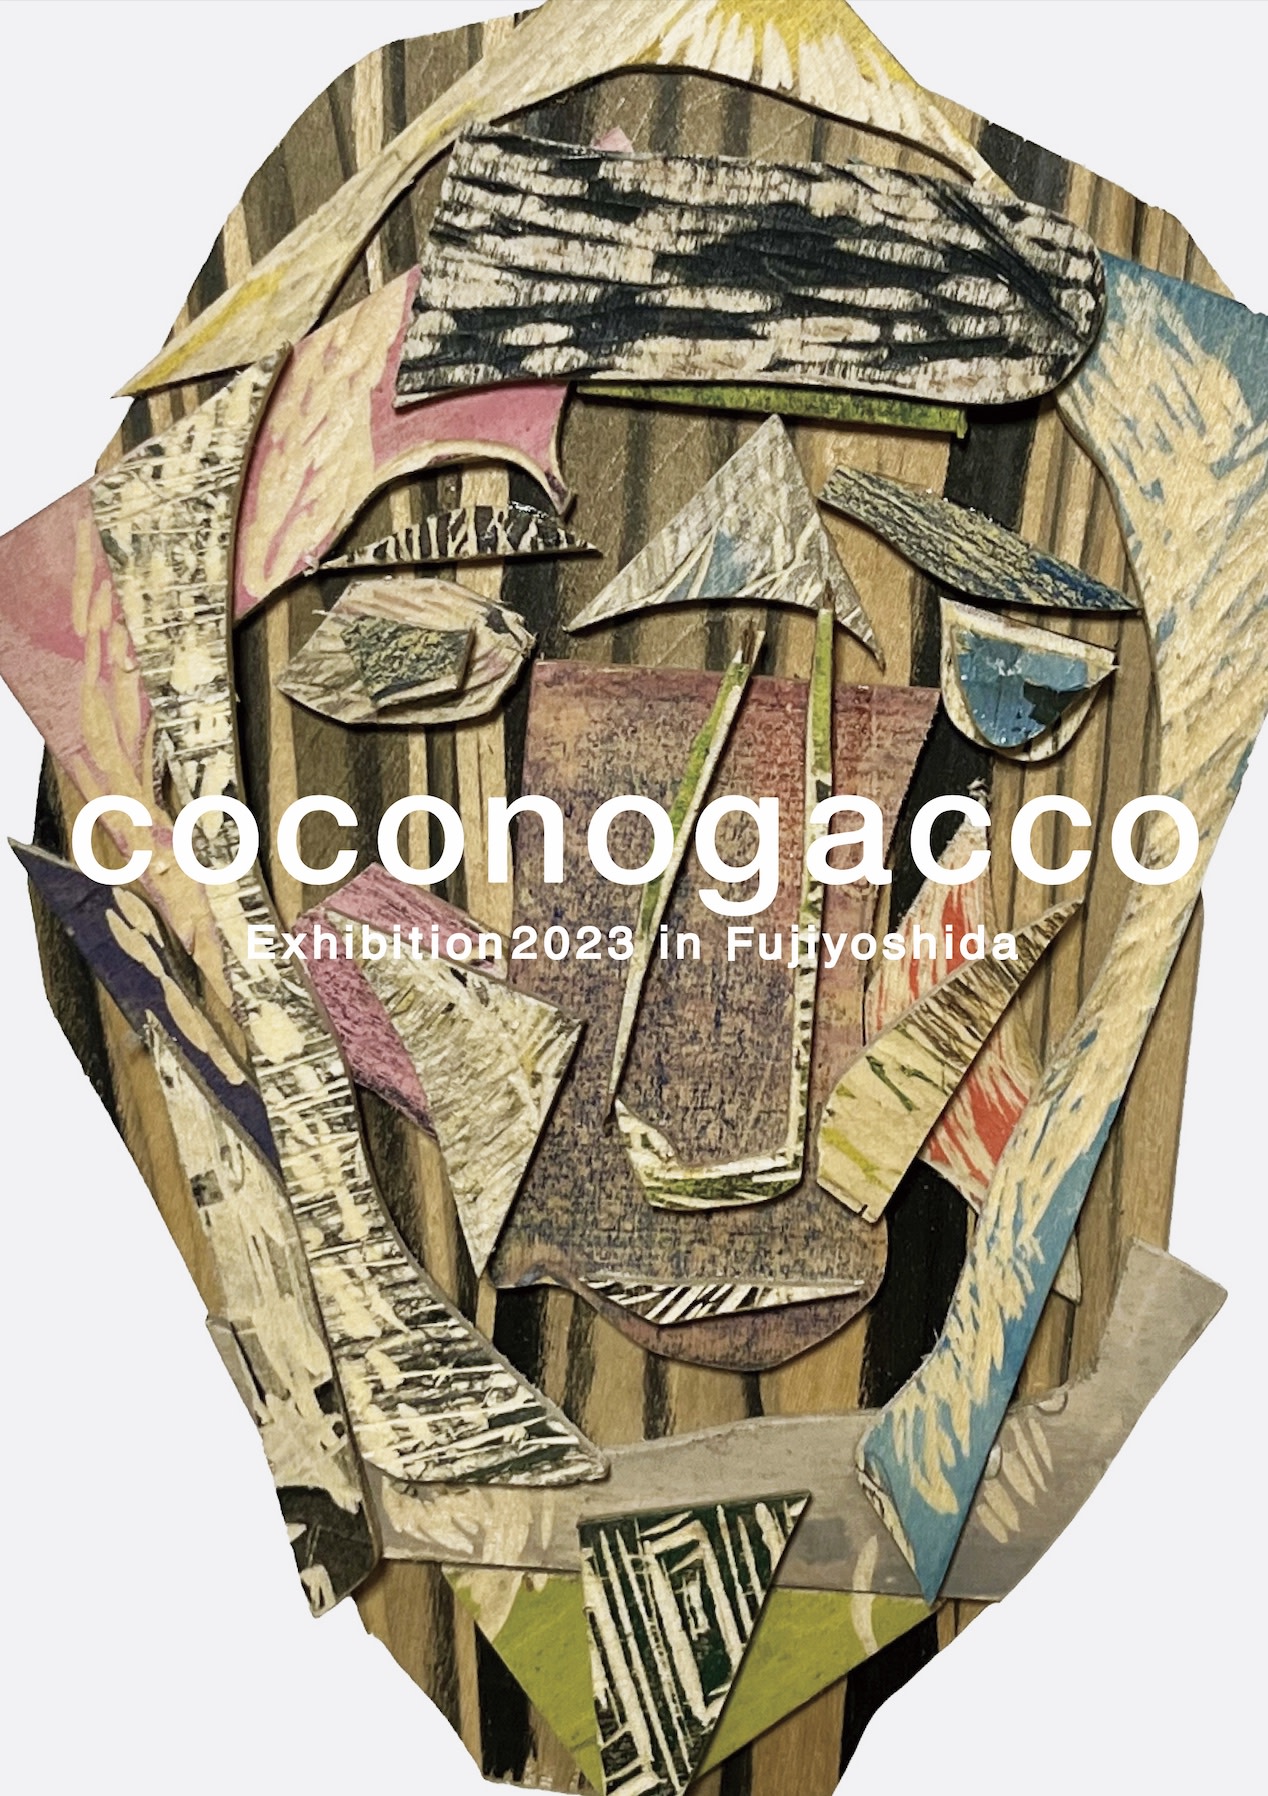 Picture of coconogacco2022年度受講生による展覧会 「coconogacco exhibition 2023」を開催